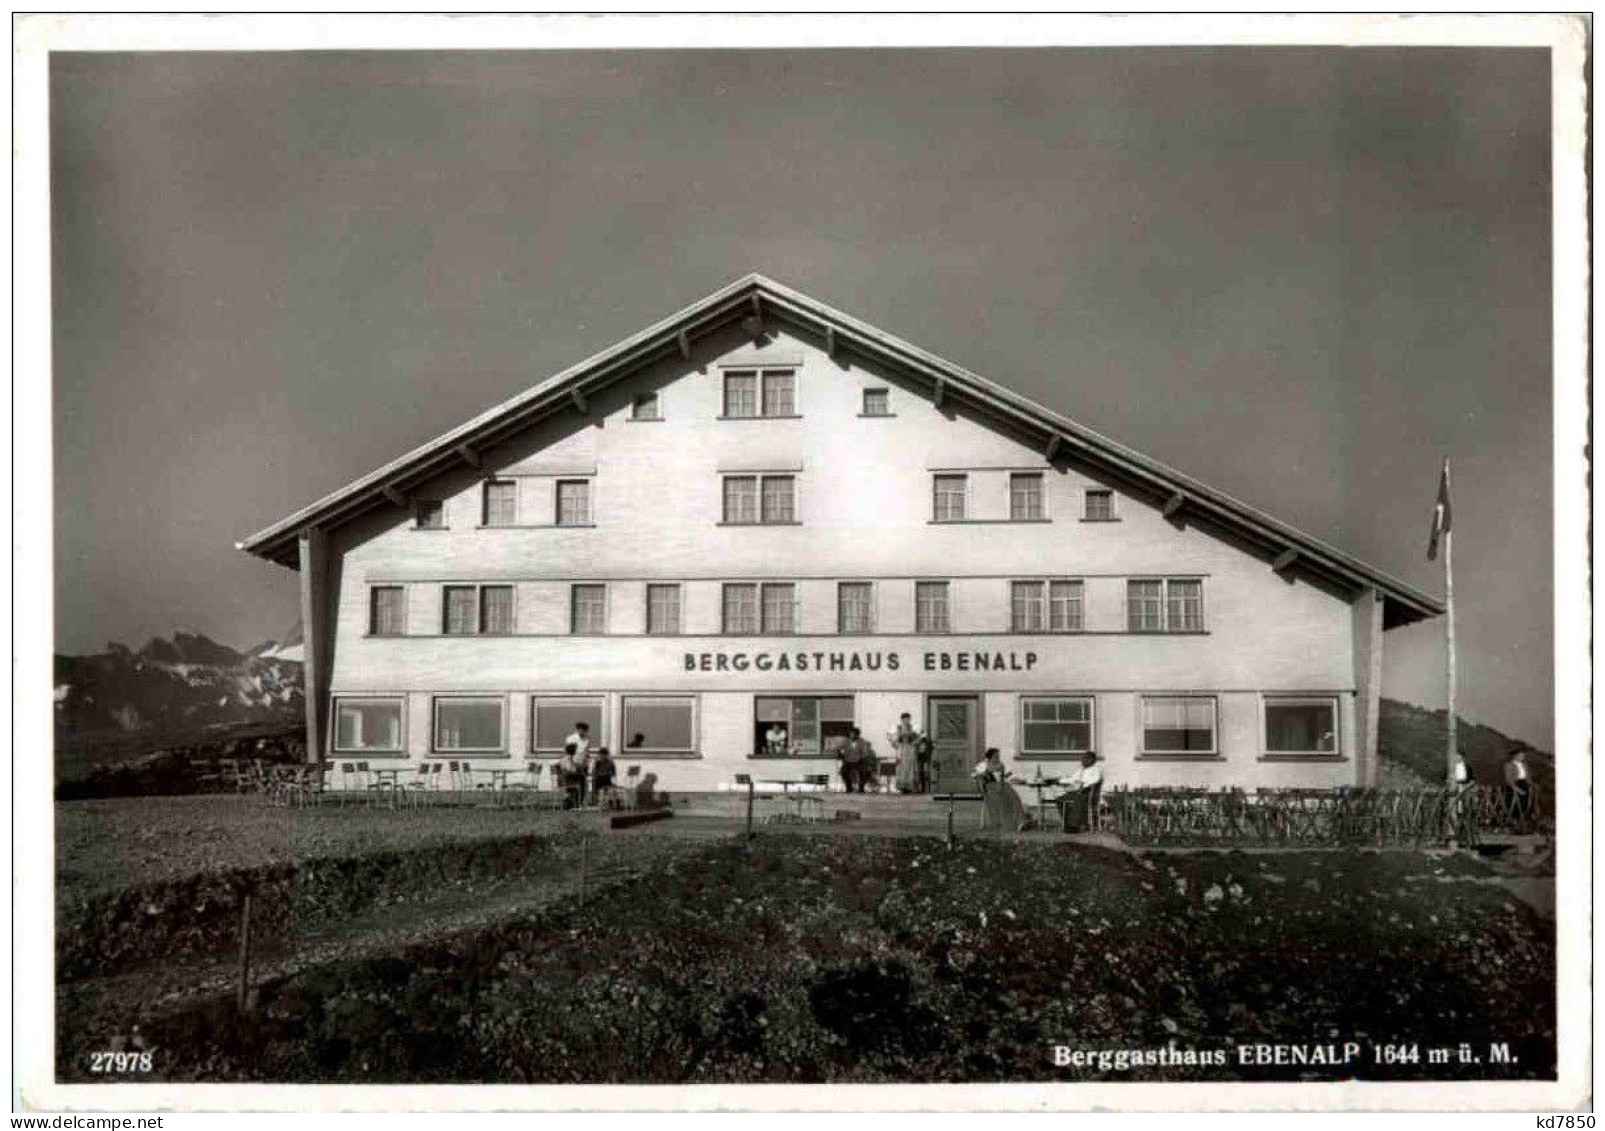 Weissbad - Berggasthaus Ebenalp - Weissbad 